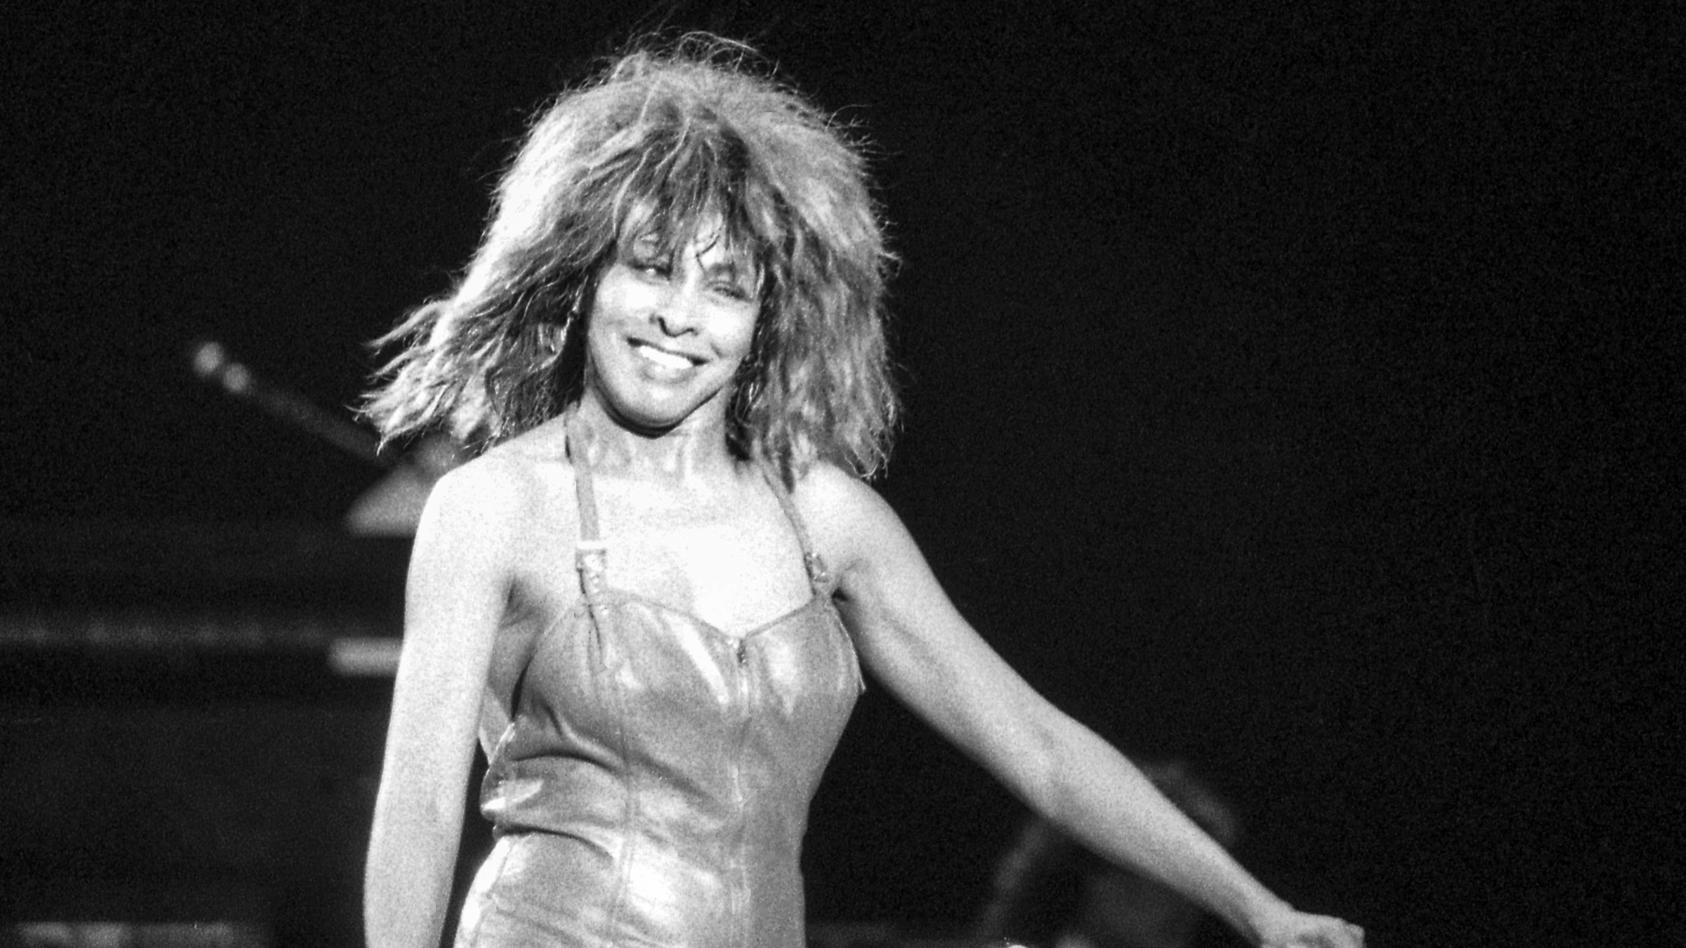 Ihr Tour-Manager erinnert sich - So war Tina Turner wirklich